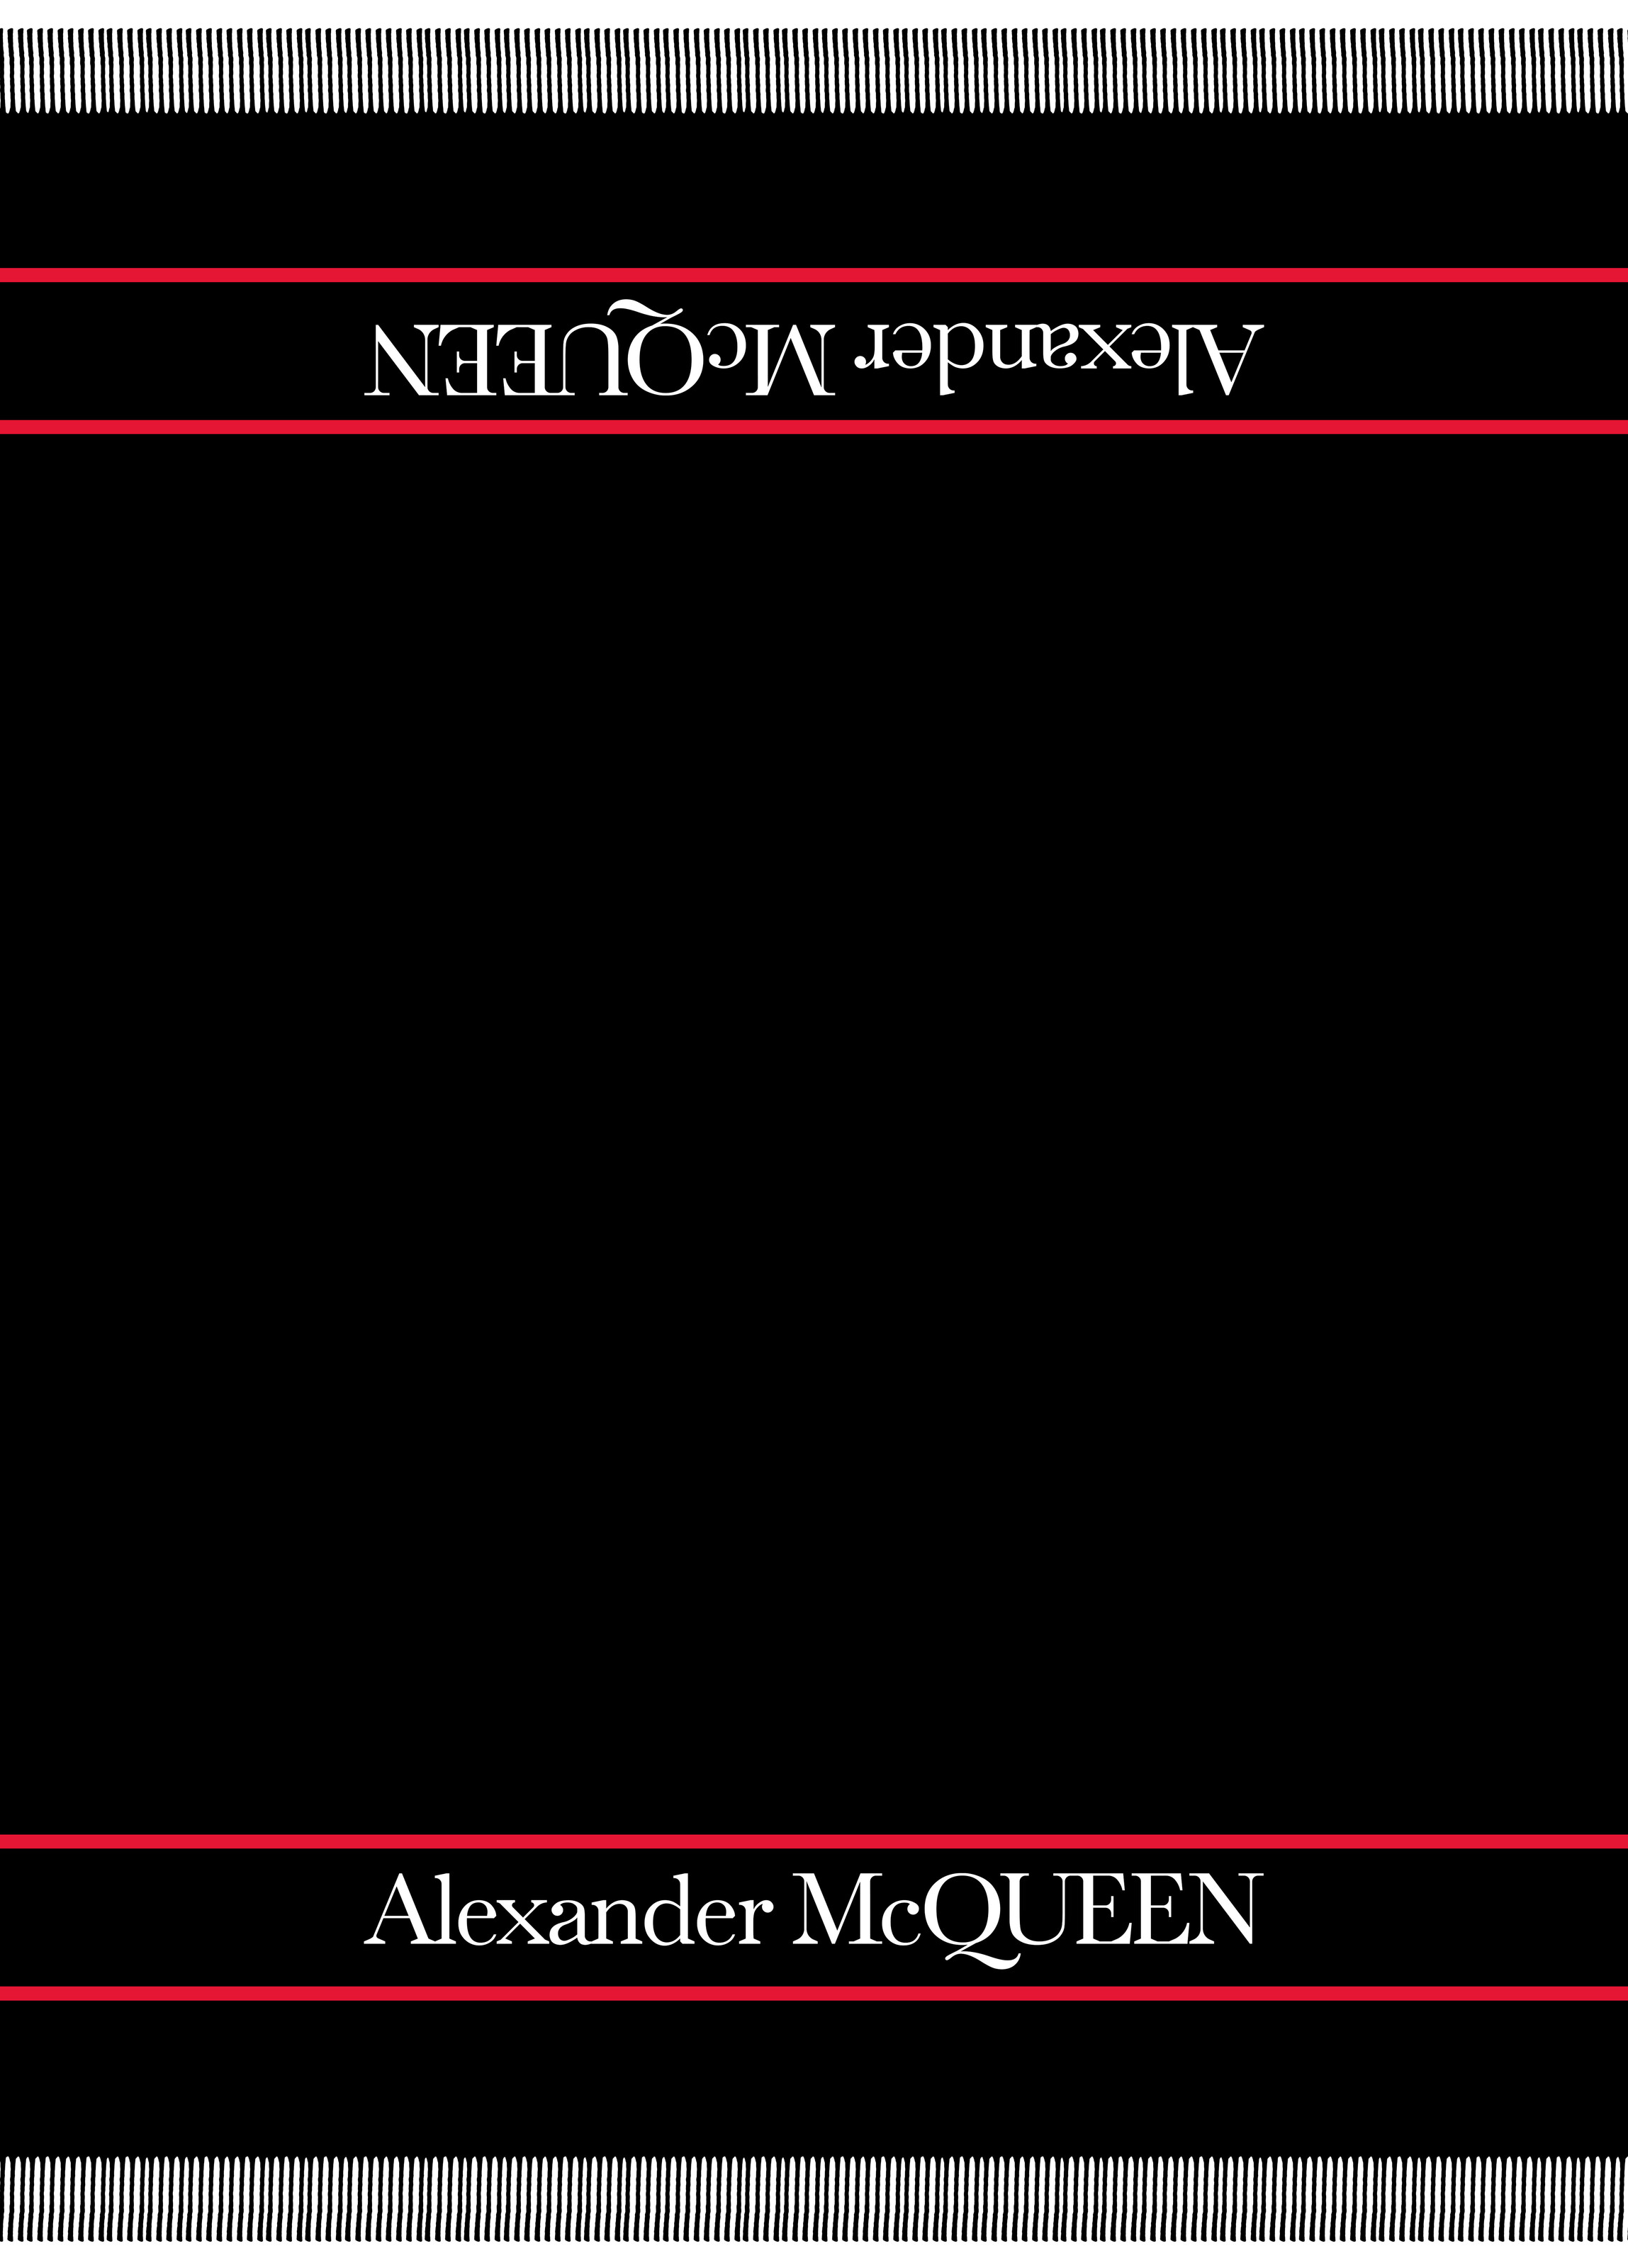 Alexander Mcqueen Selvedge Blanket In Black/red